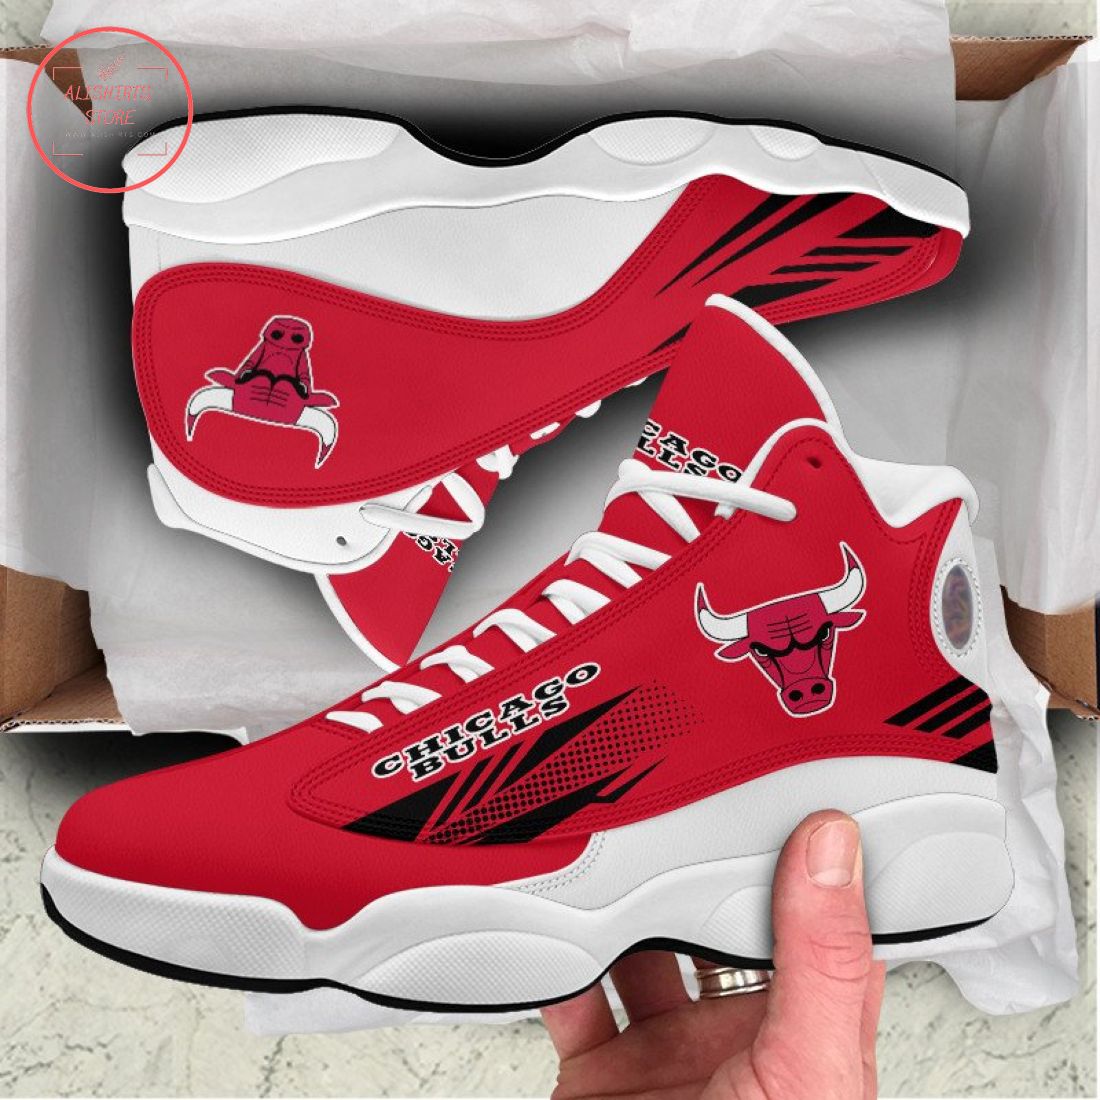 Chicago Bulls Air Jordan 13 Sneaker Shoes